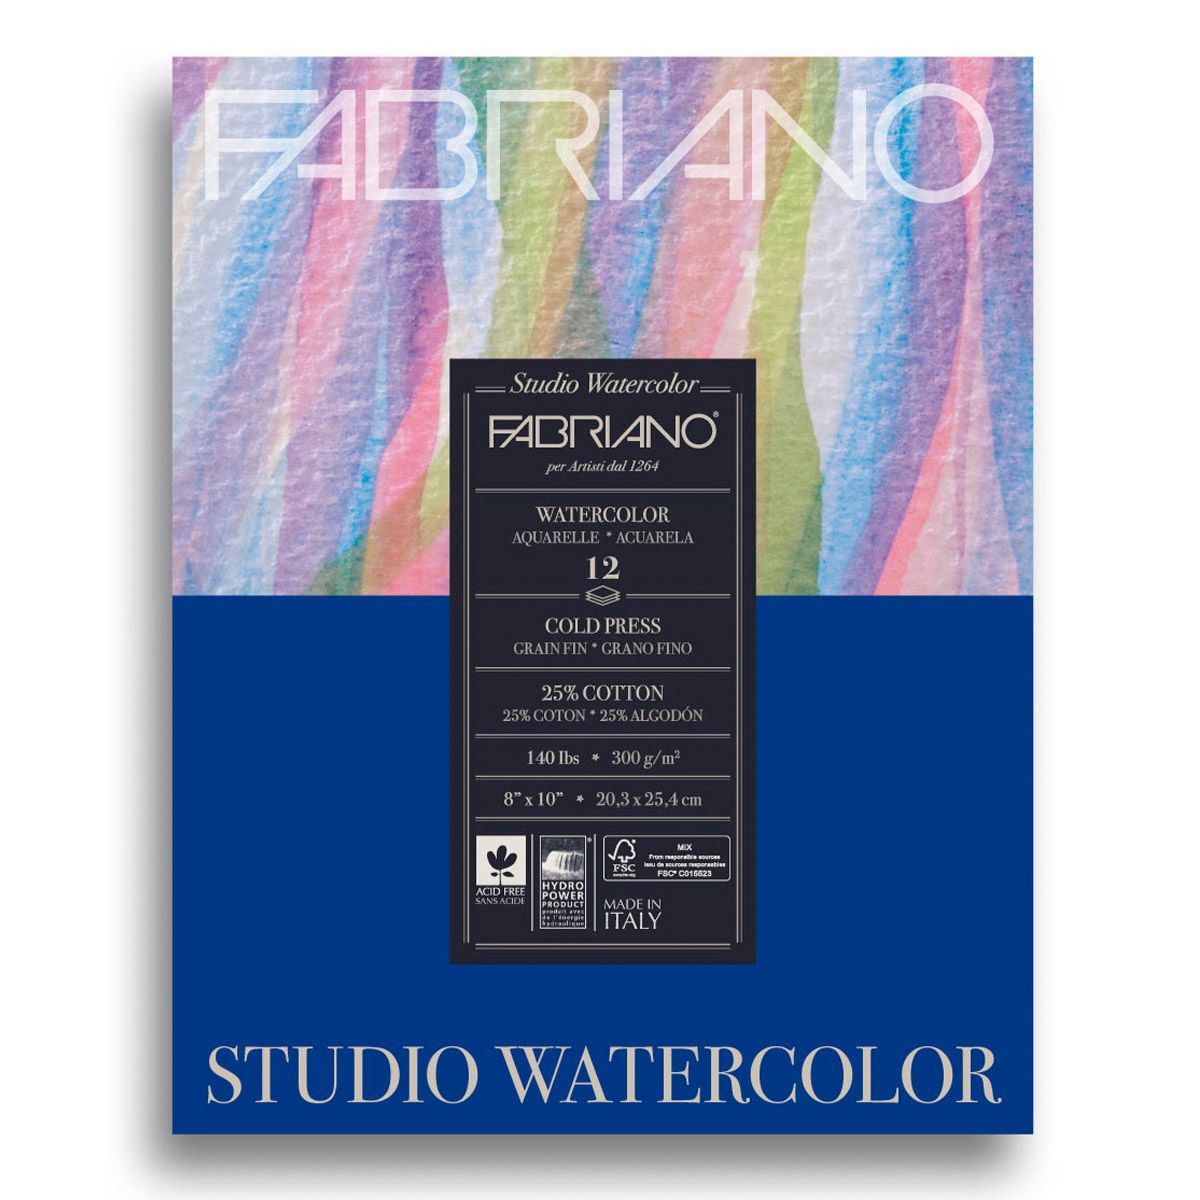 Fabriano Studio Watercolour CP 12 Shts. Pad, 140lb 8x10 inch